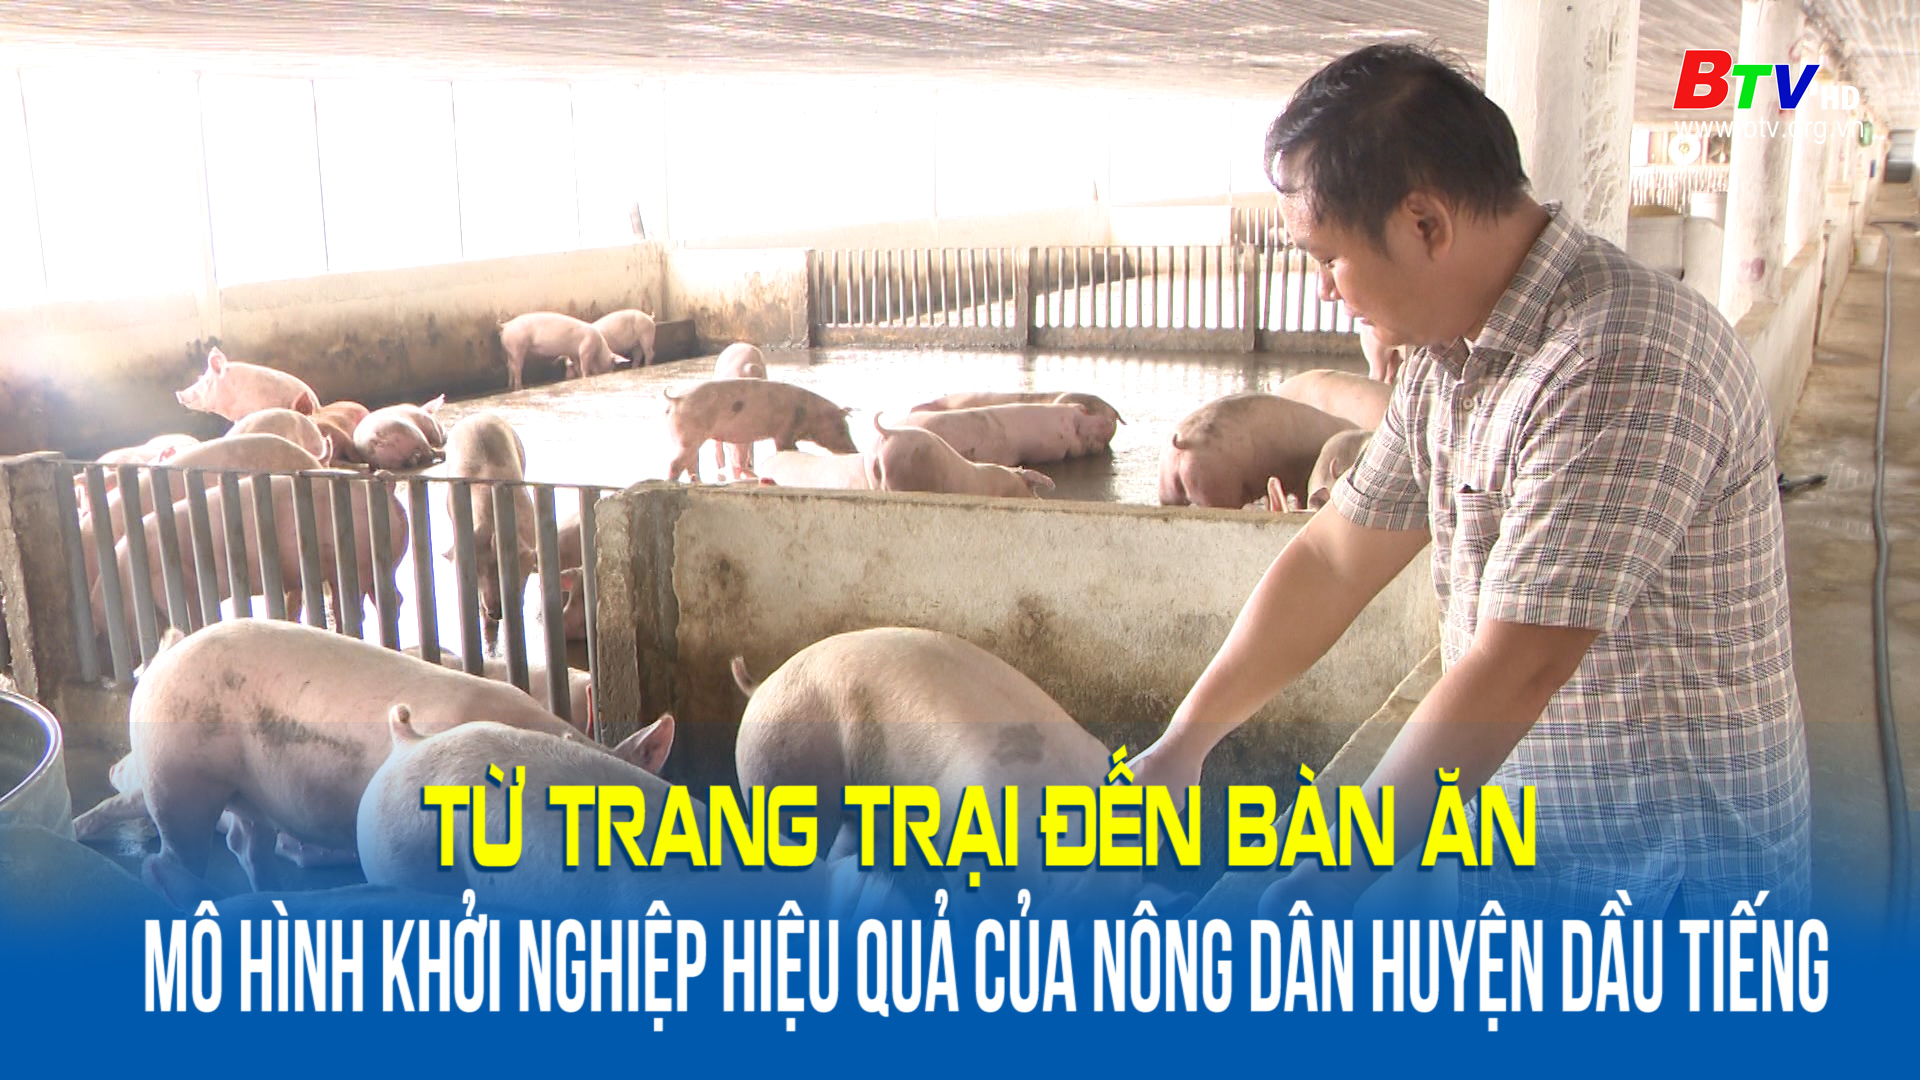 Từ trang trại đến bàn ăn mô hình khởi nghiệp hiệu quả của nông dân huyện Dầu Tiếng